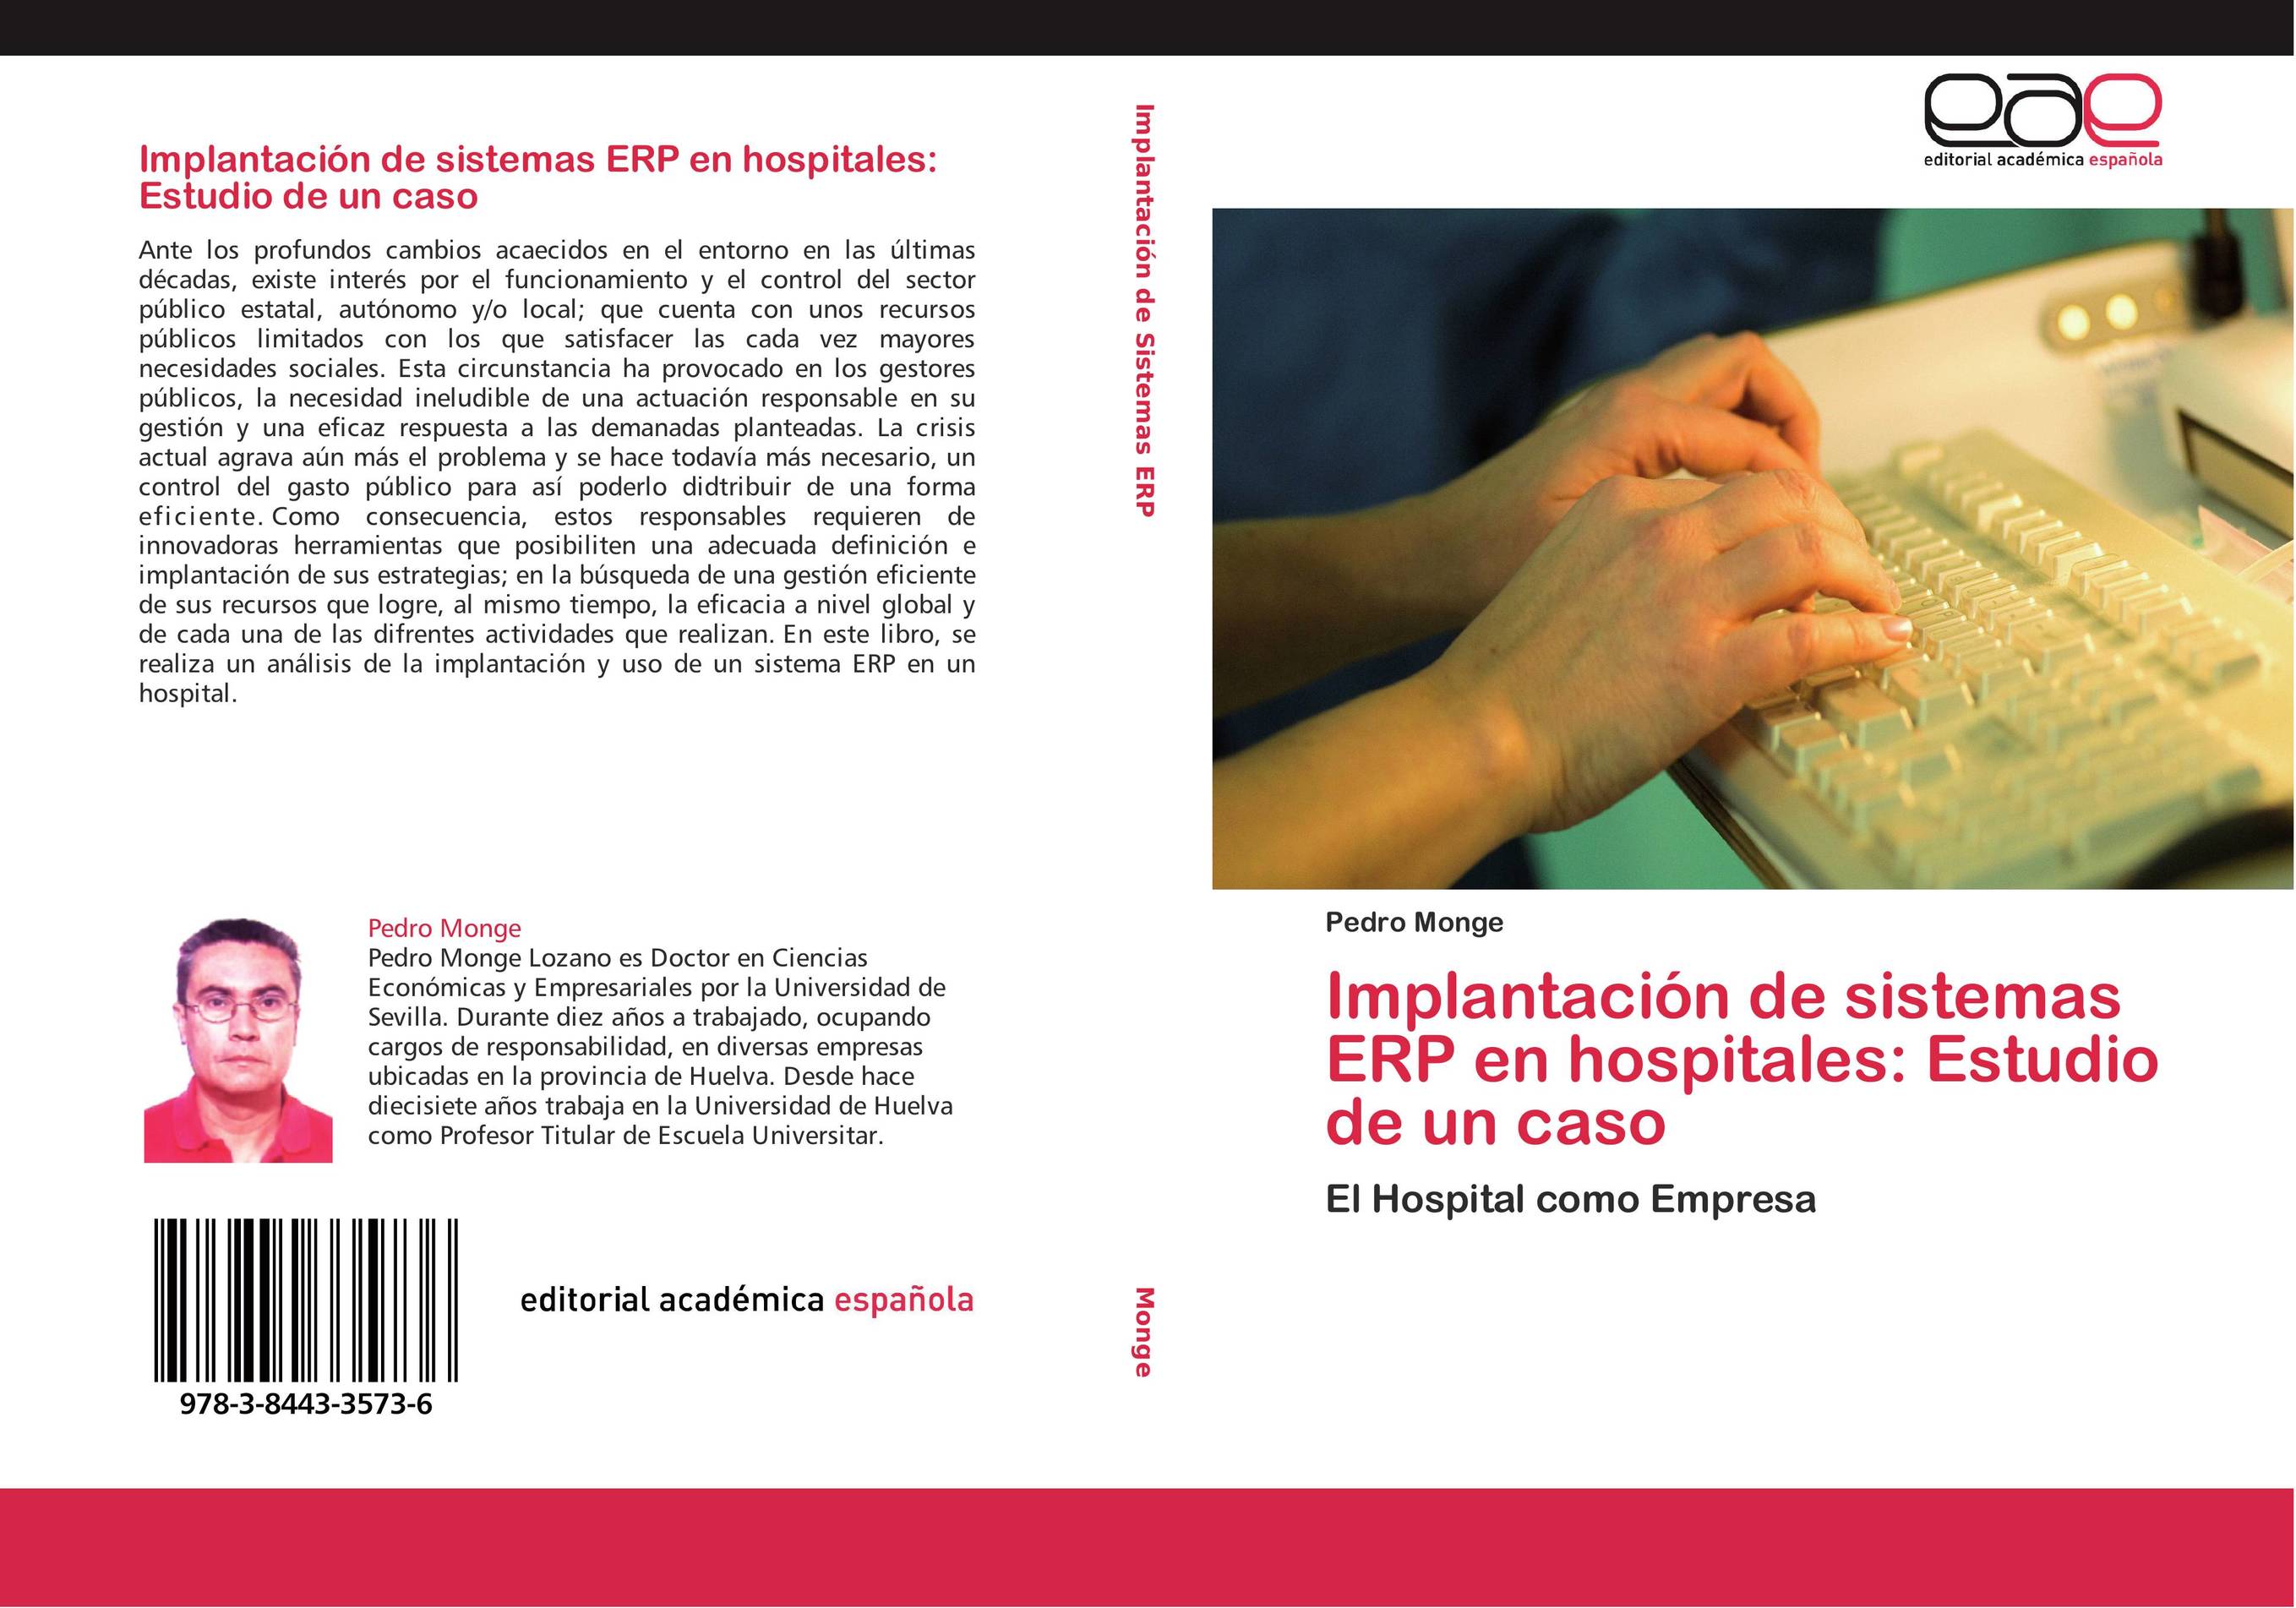 Implantación de sistemas ERP en hospitales: Estudio de un caso